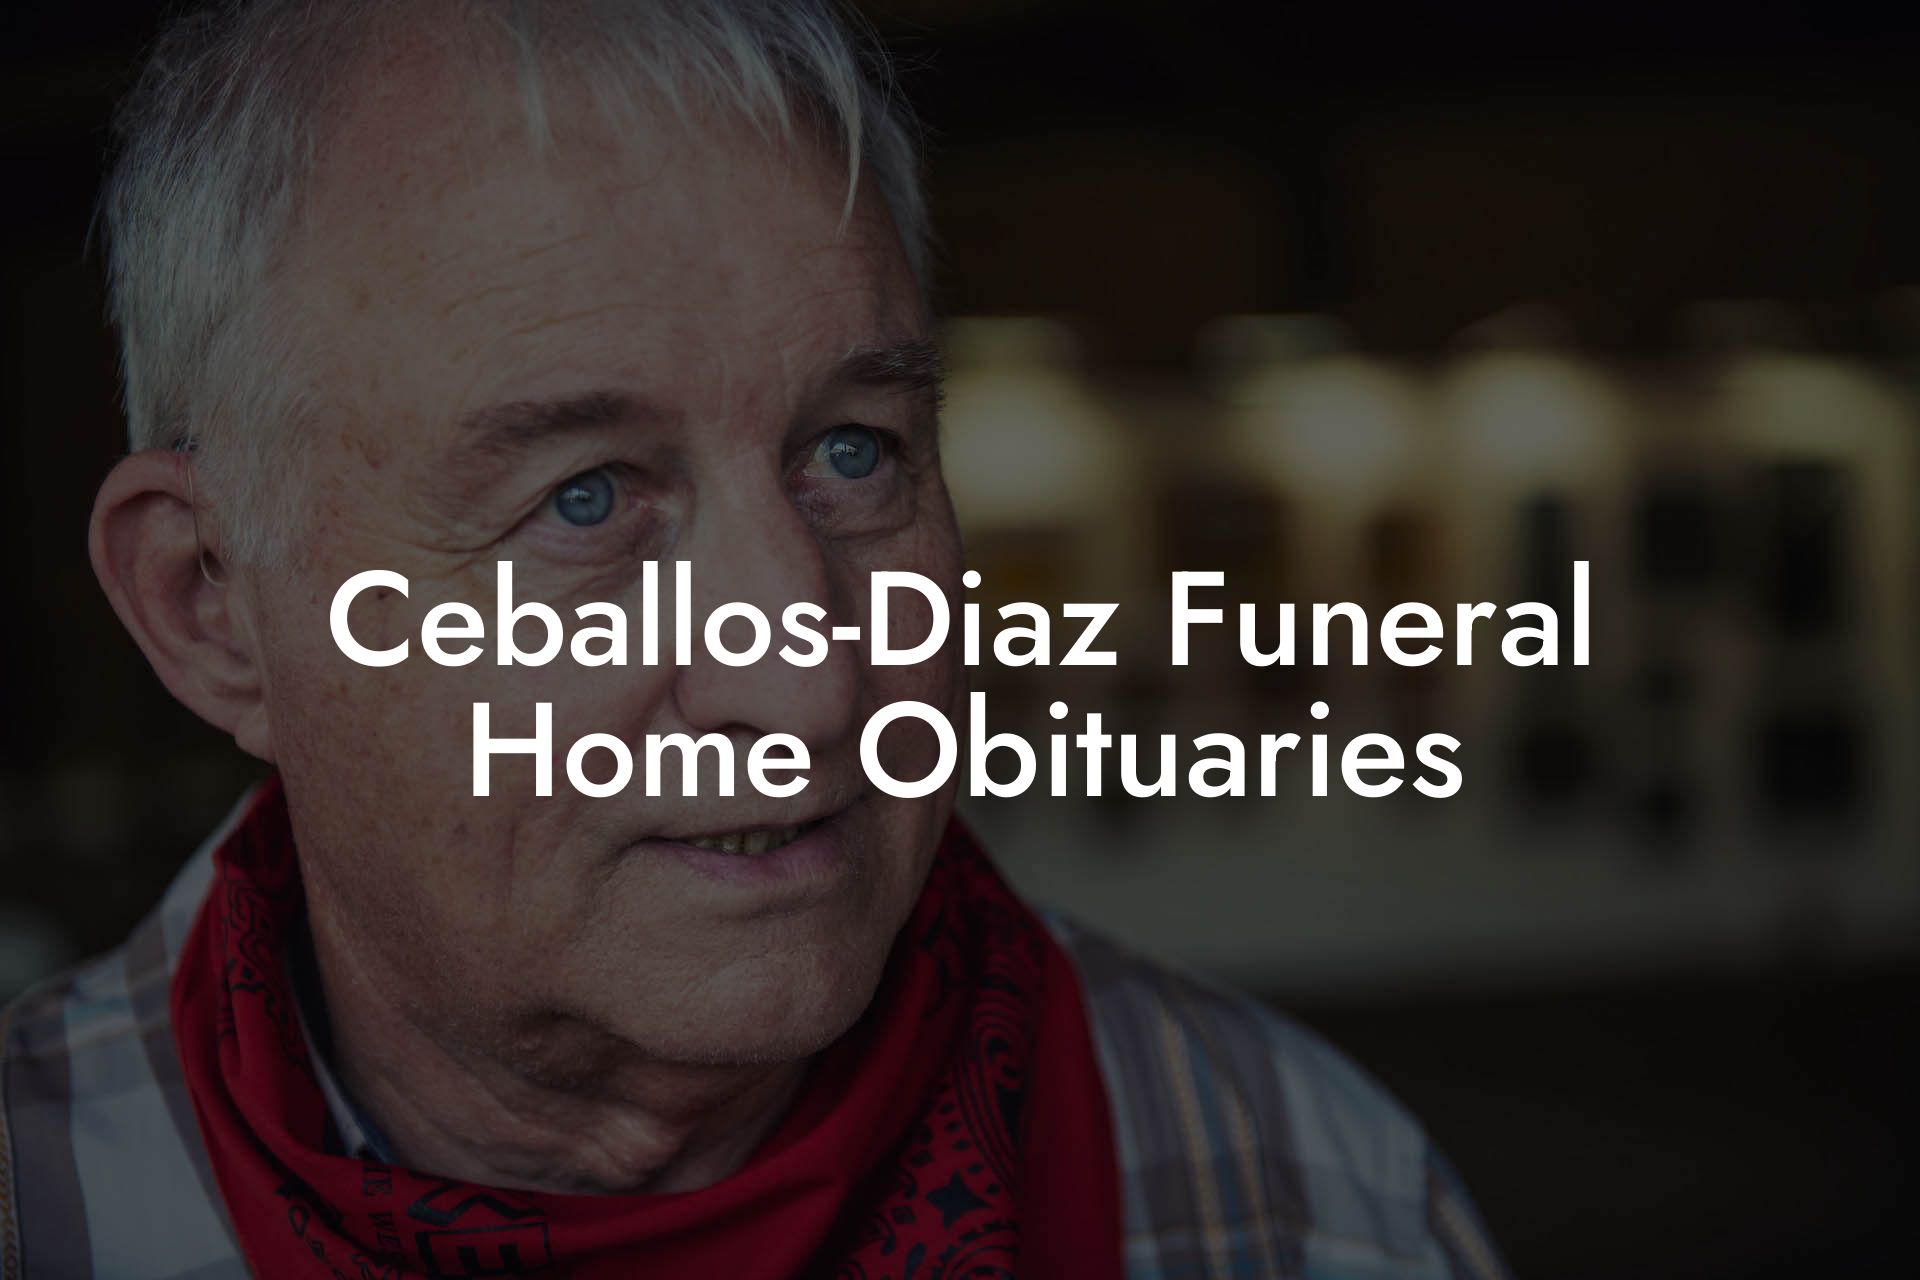 Ceballos-Diaz Funeral Home Obituaries